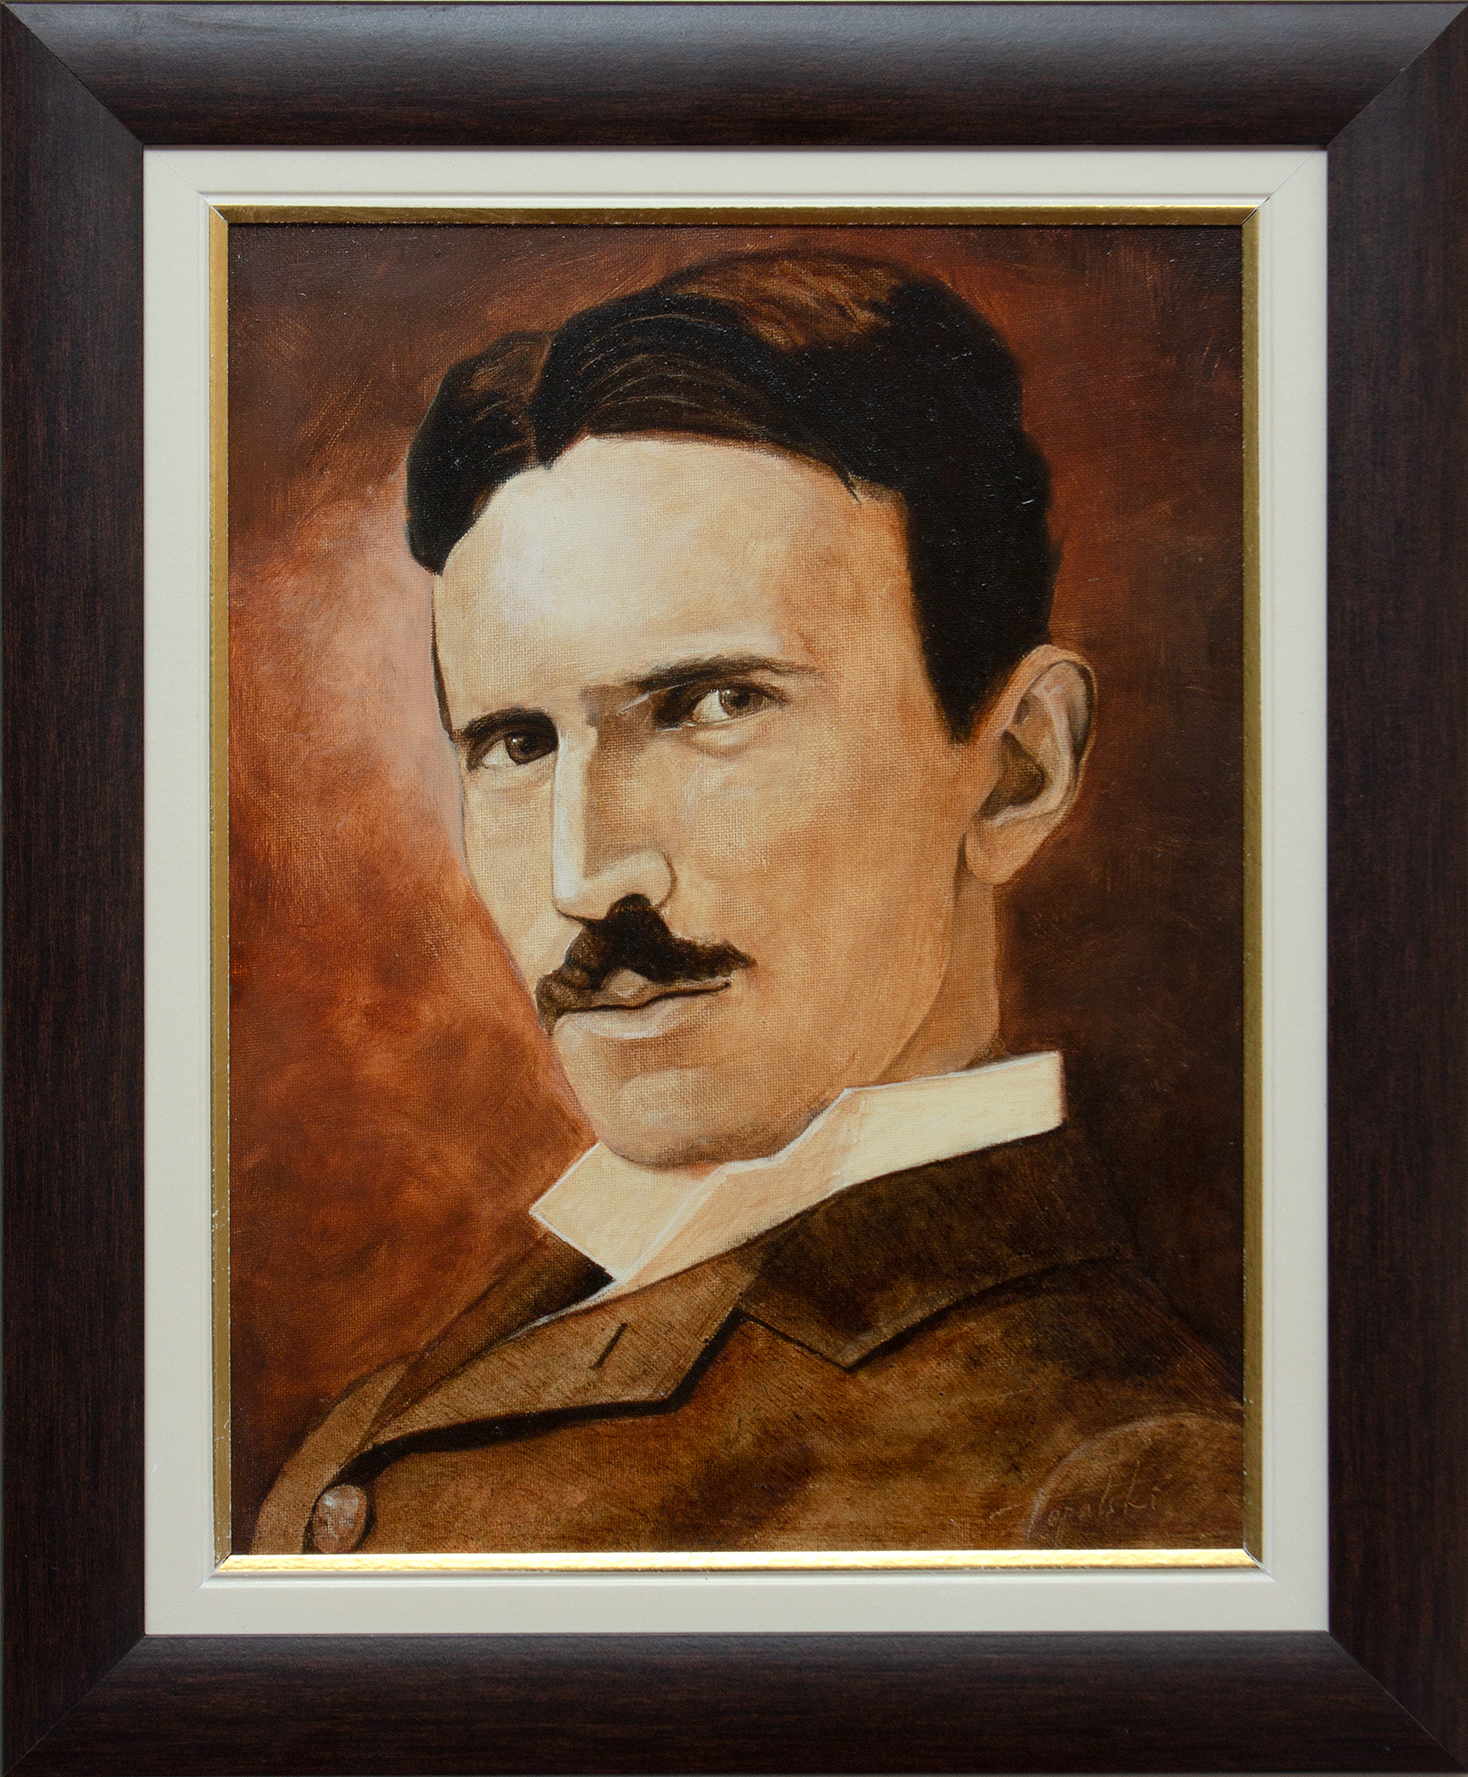 Nikola Tesla Sepija Portret - 40x30cm, 2011. - Uramljeno Ulje na platnu - sa ramom 52x43cm - umetnik Darko Topalski